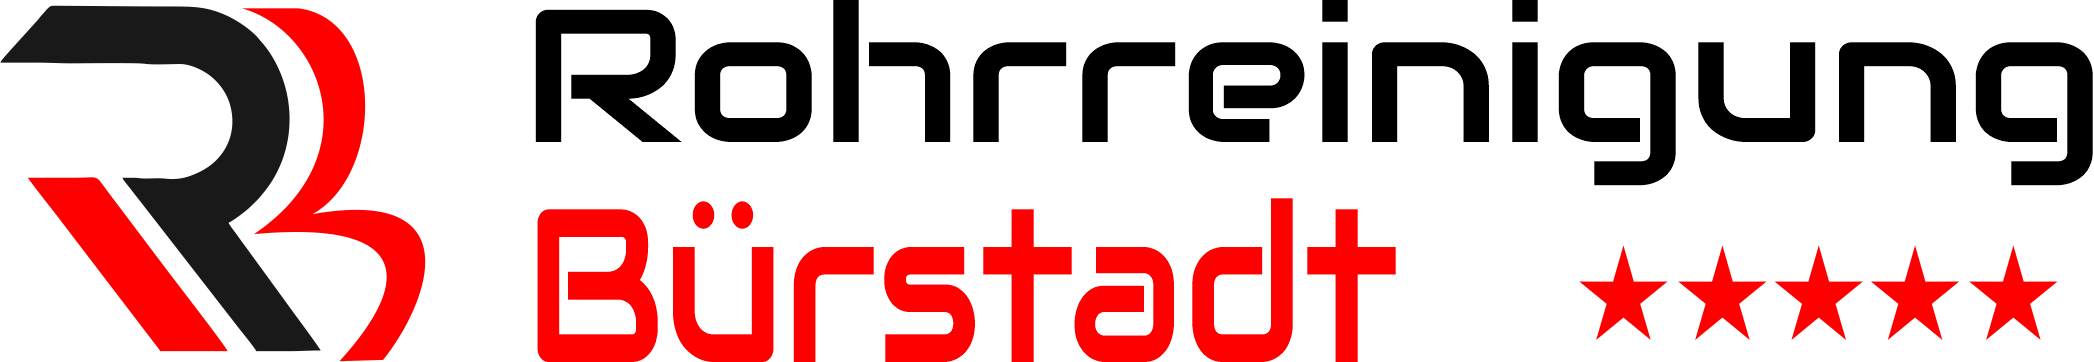 Rohrreinigung Bürstadt Logo